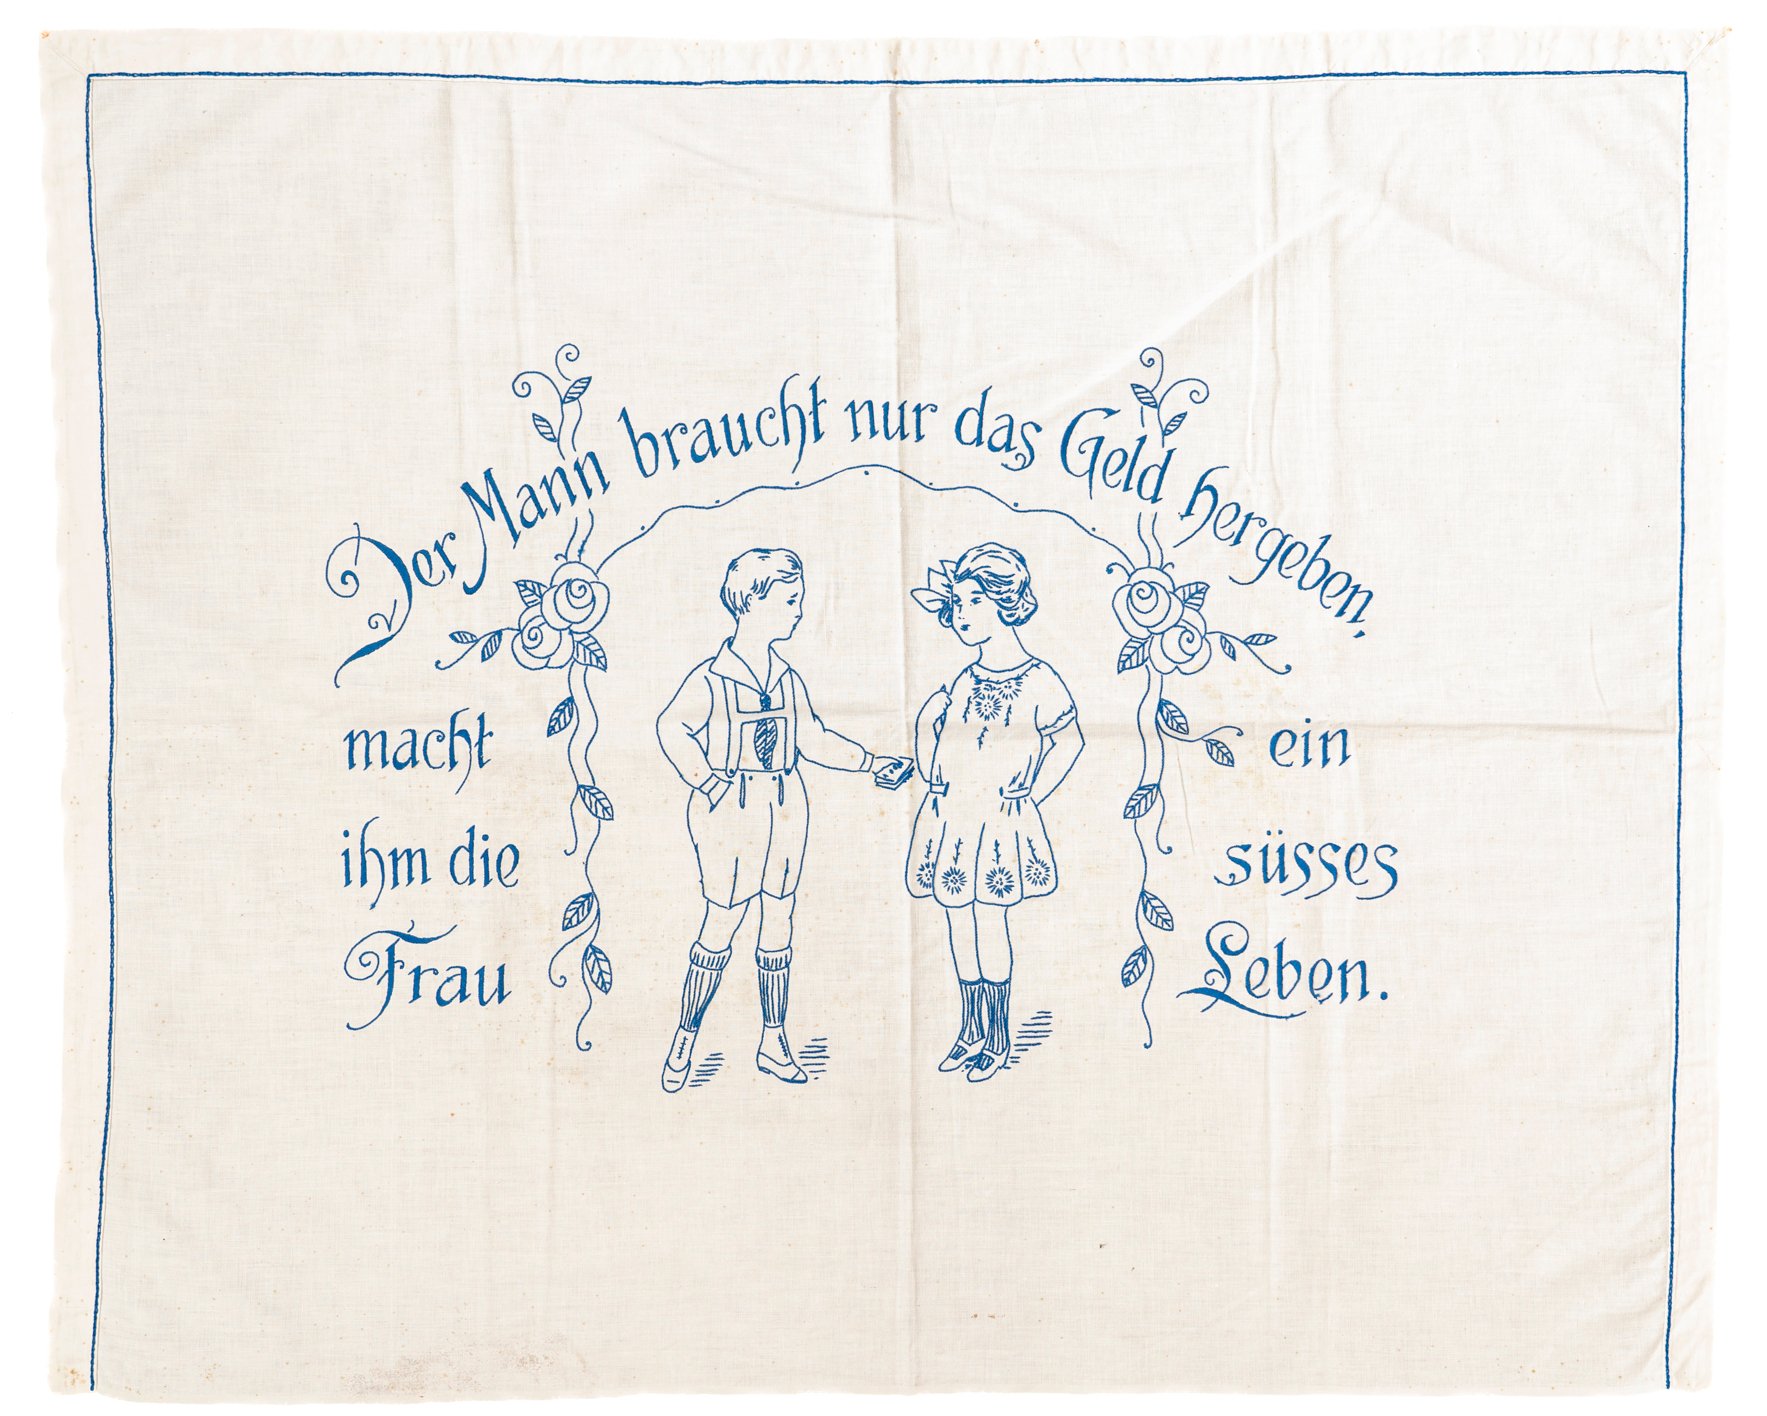 Spruchtuch: Der Mann braucht nur das Geld hergeben, macht ihm die Frau ein süsses Leben (Museum Abtei Liesborn des Kreises Warendorf CC BY-NC-SA)